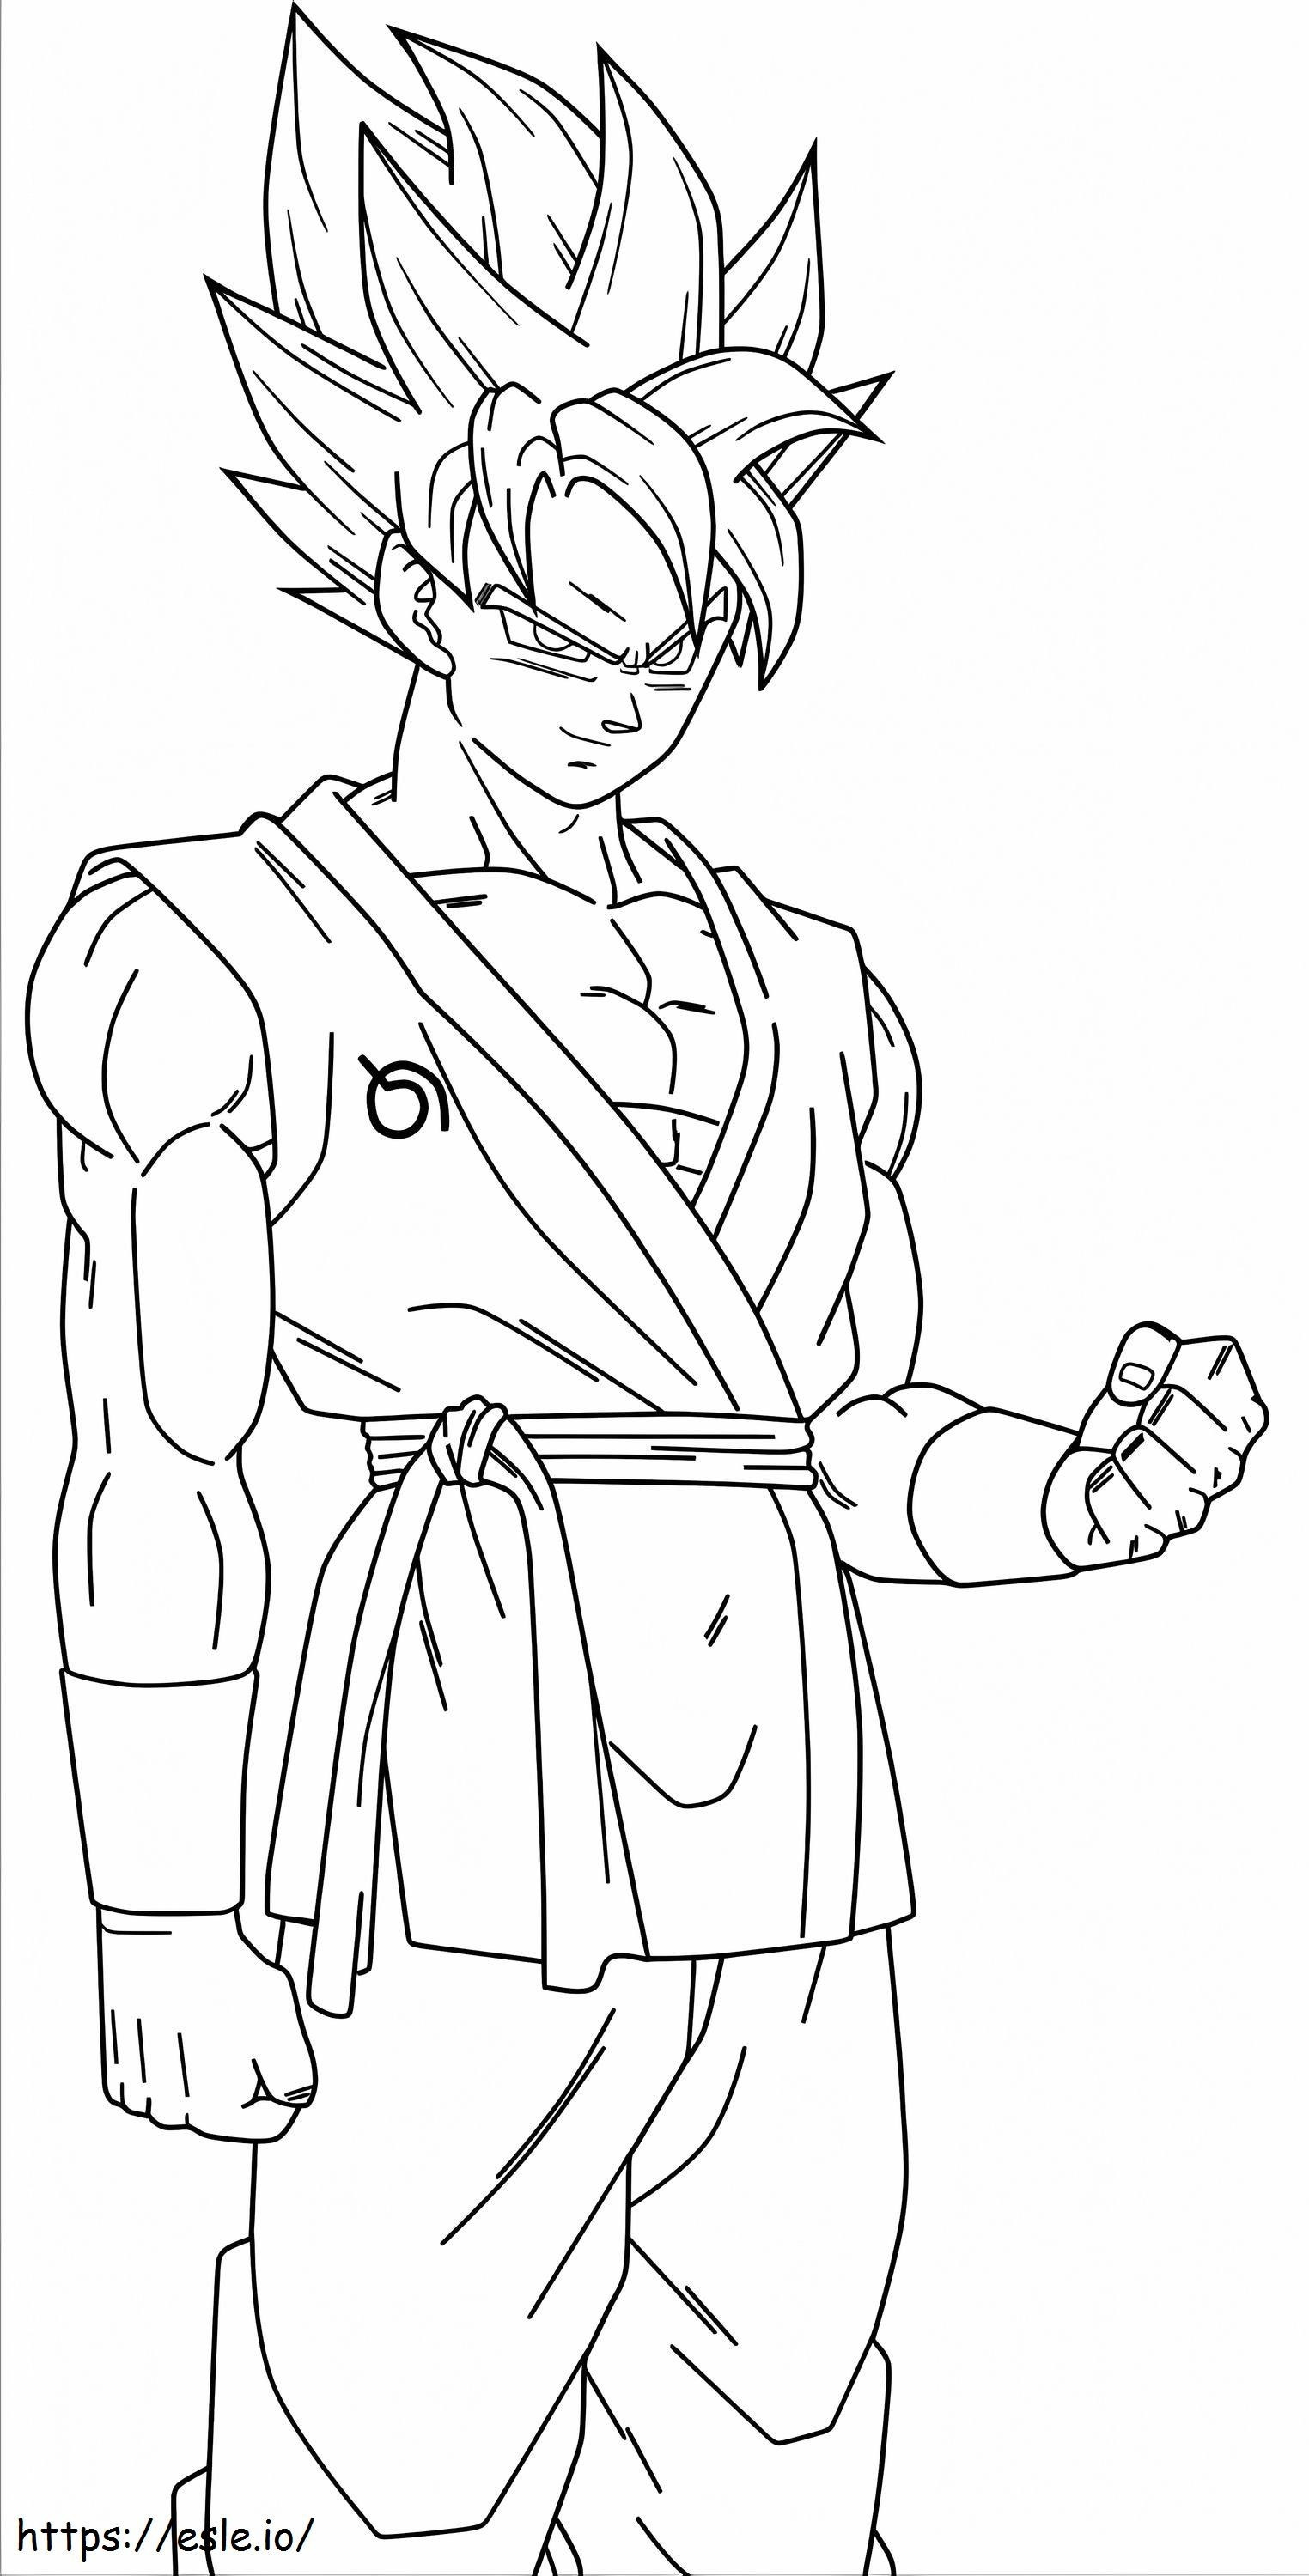 Ritratto di Goku sorridente da colorare